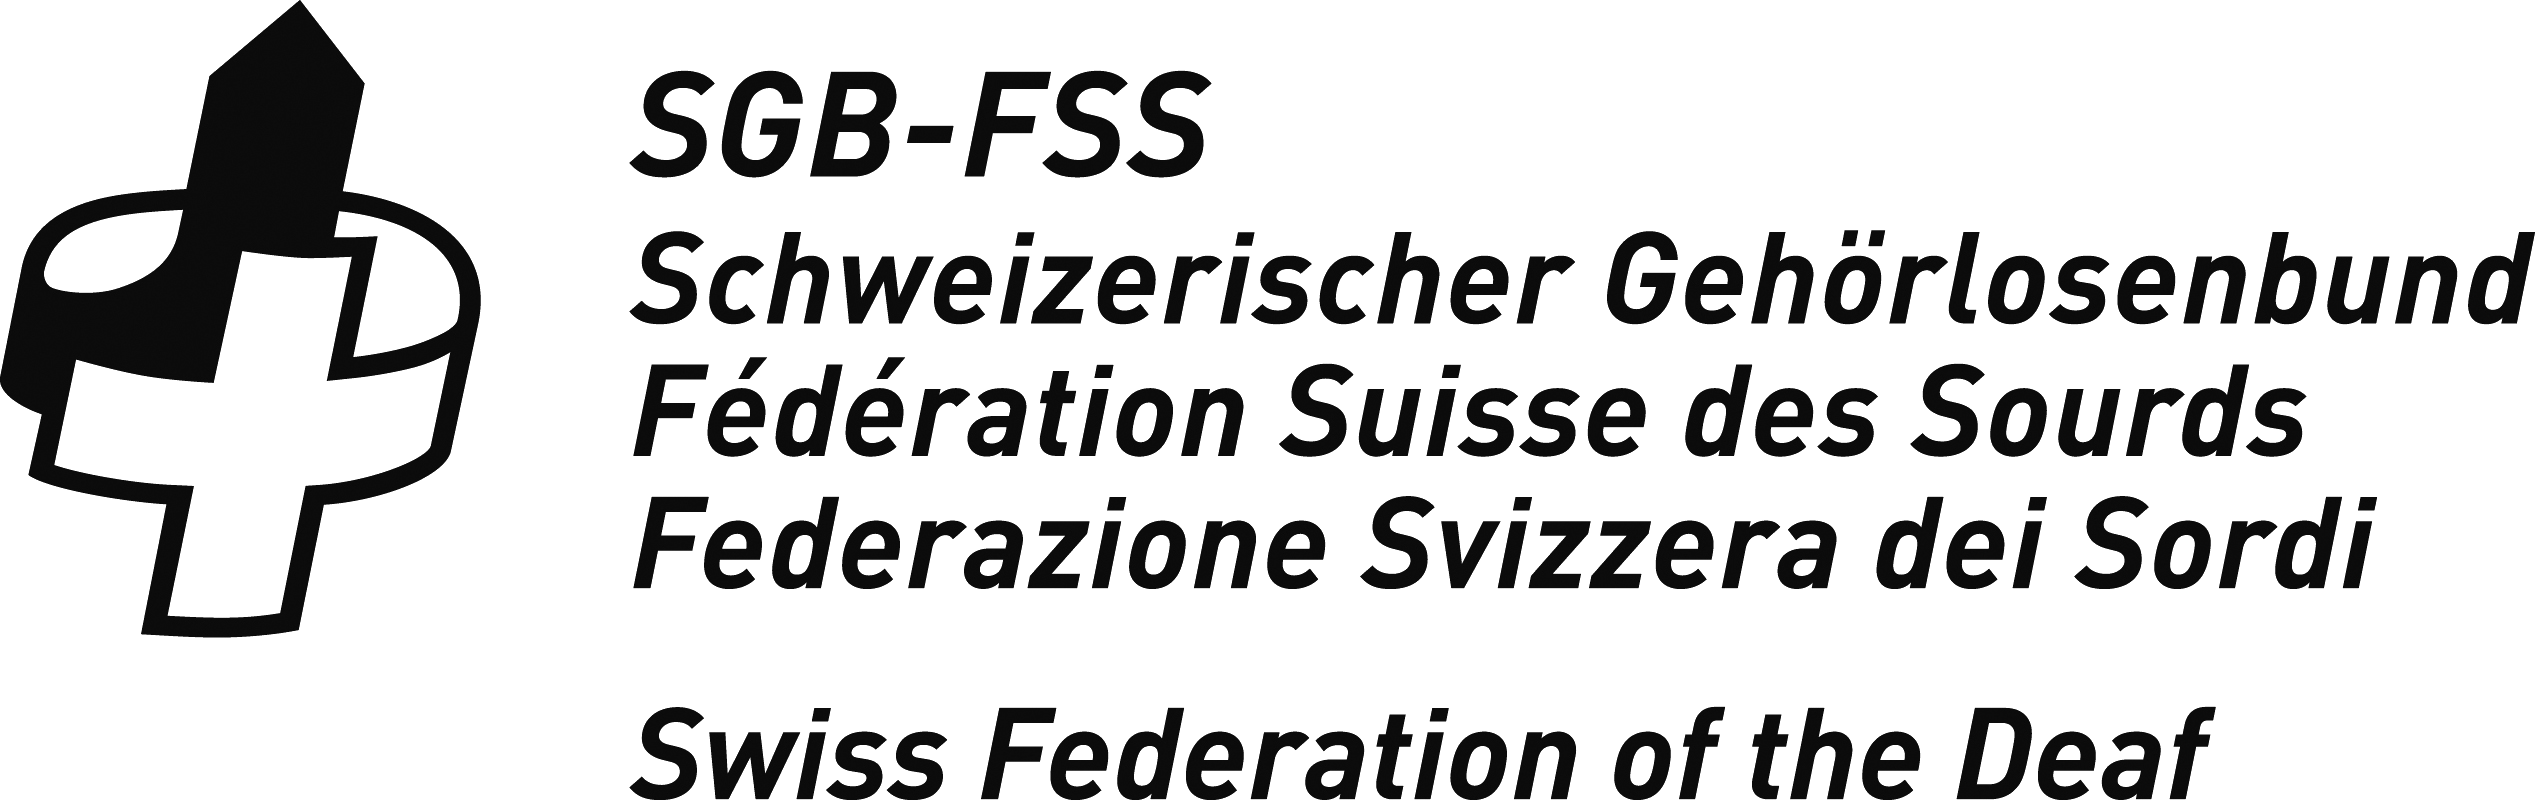 SGB-FSS logo